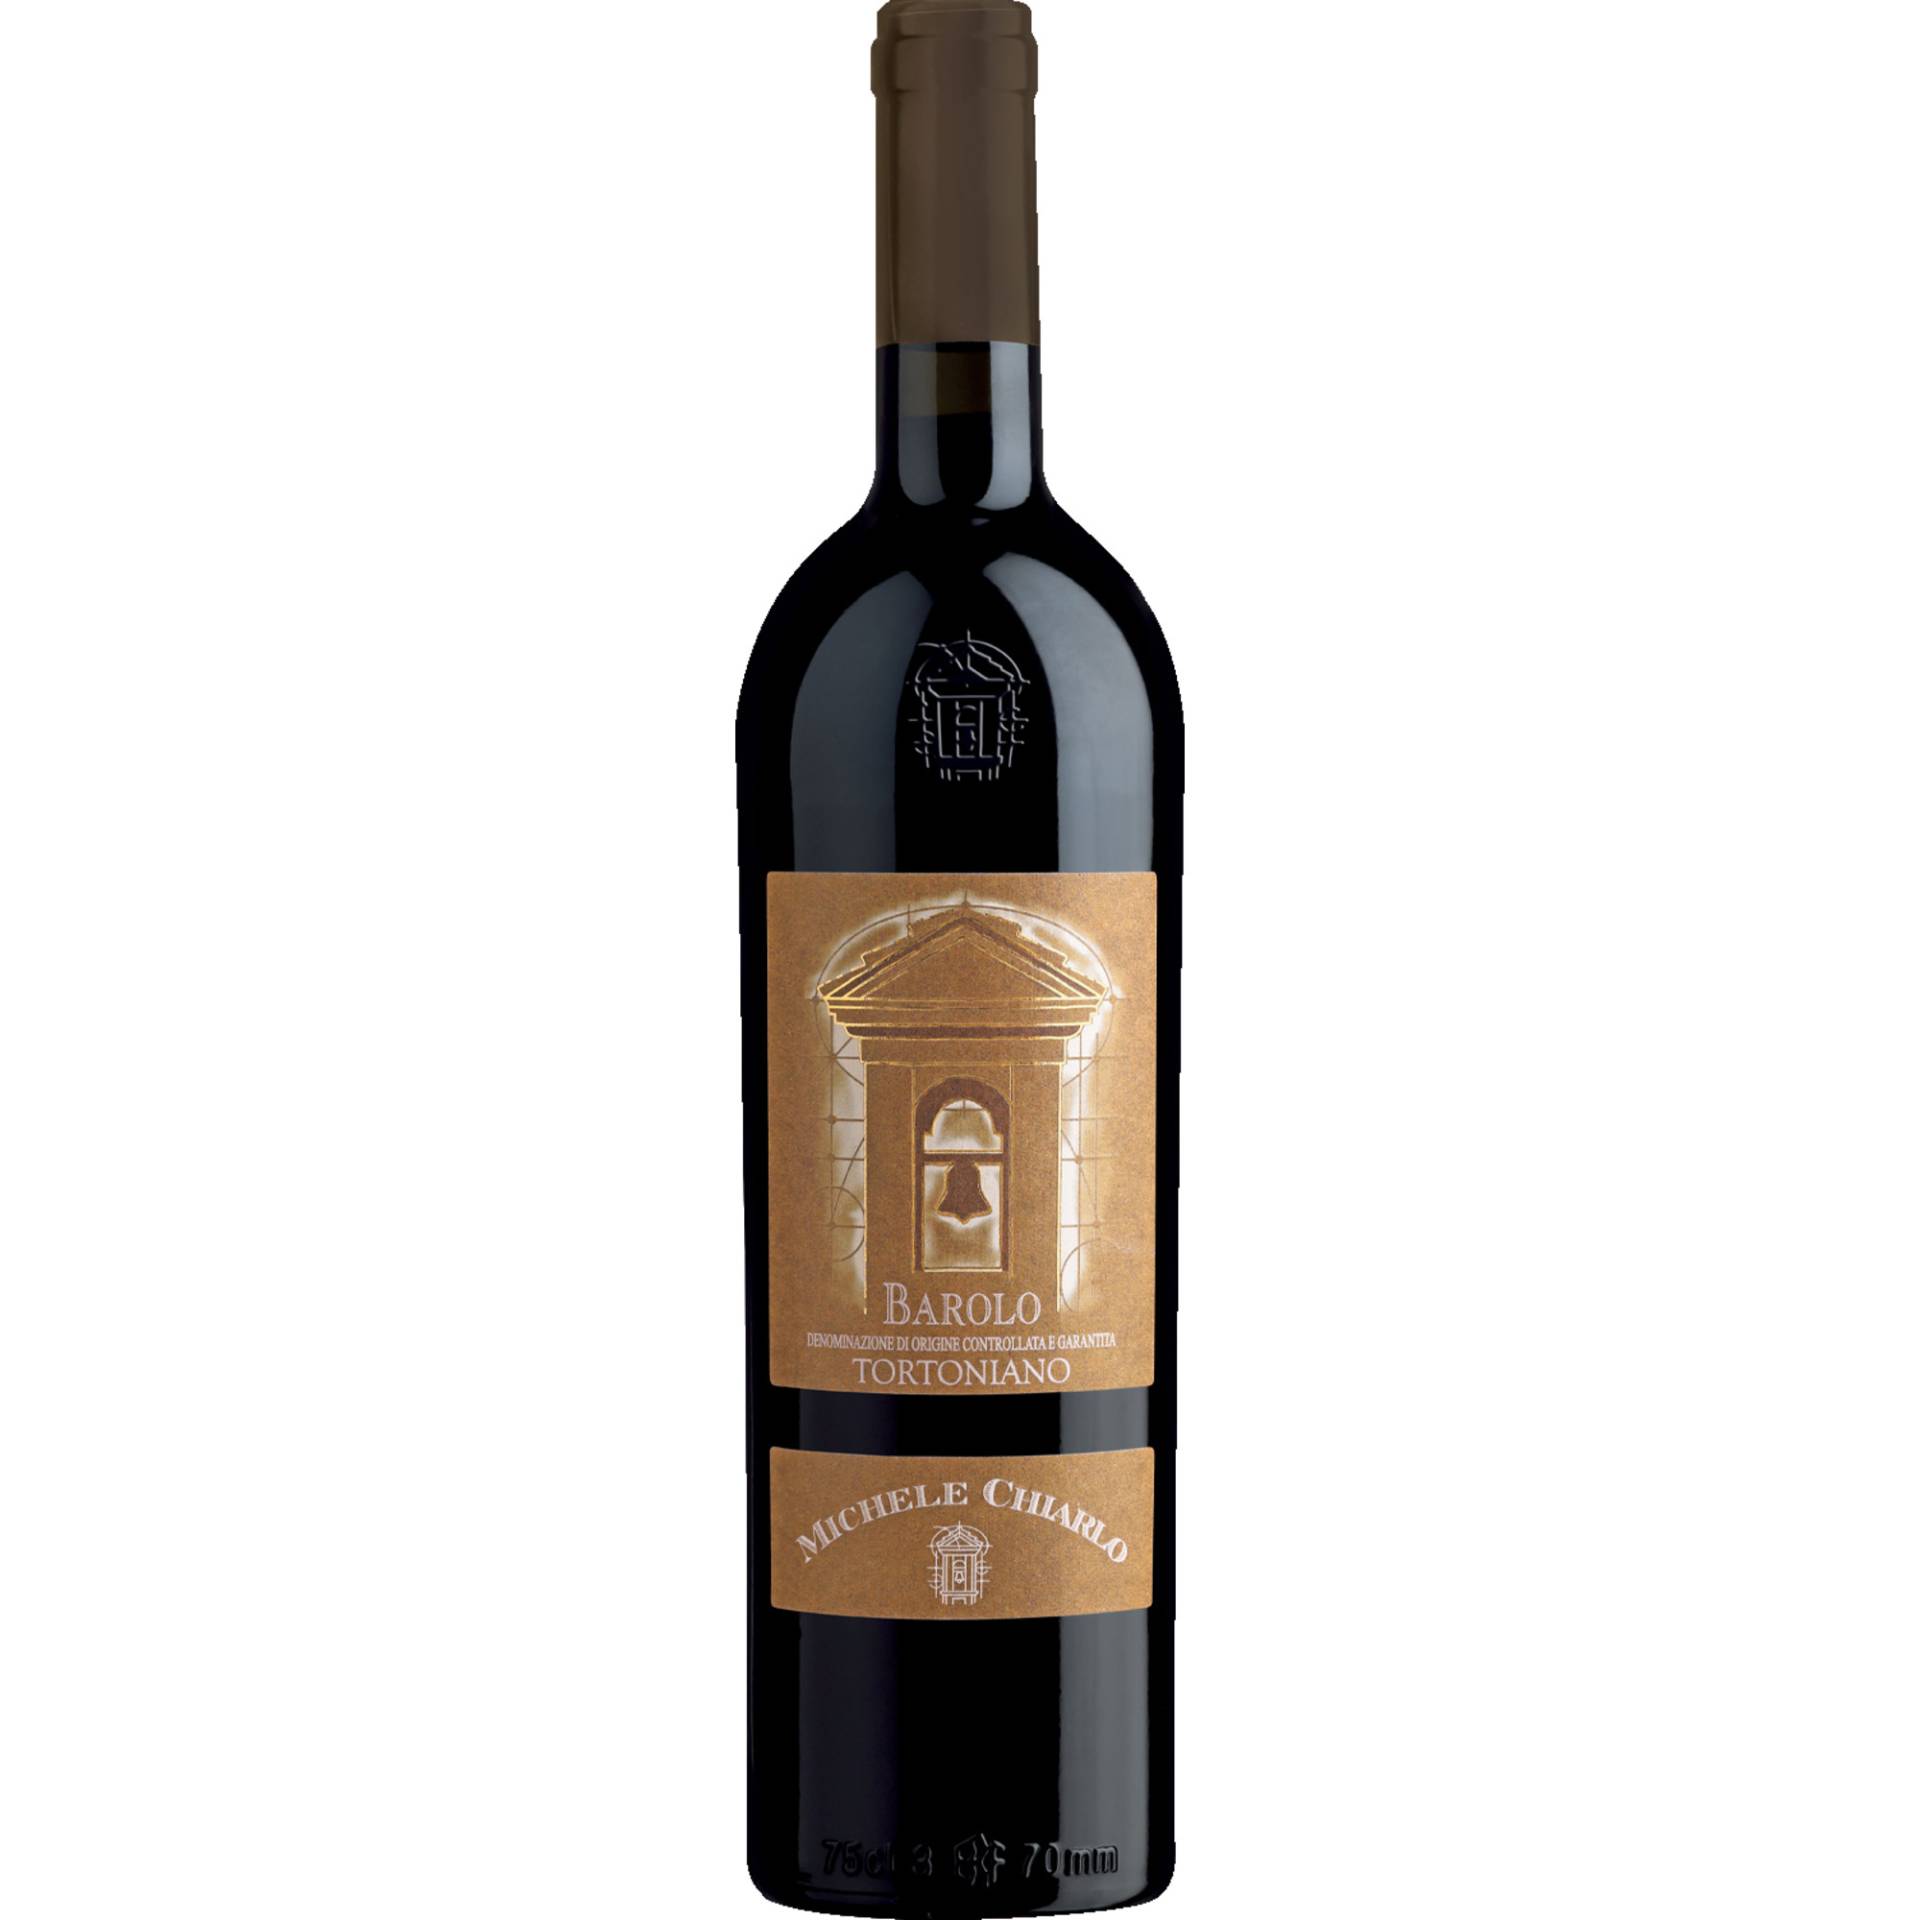 Barolo Tortoniano, Barolo DOCG, Piemont, 2019, Rotwein von Michele Chiarlo S.r.l, 14042 Calamandrana (AT), Italia